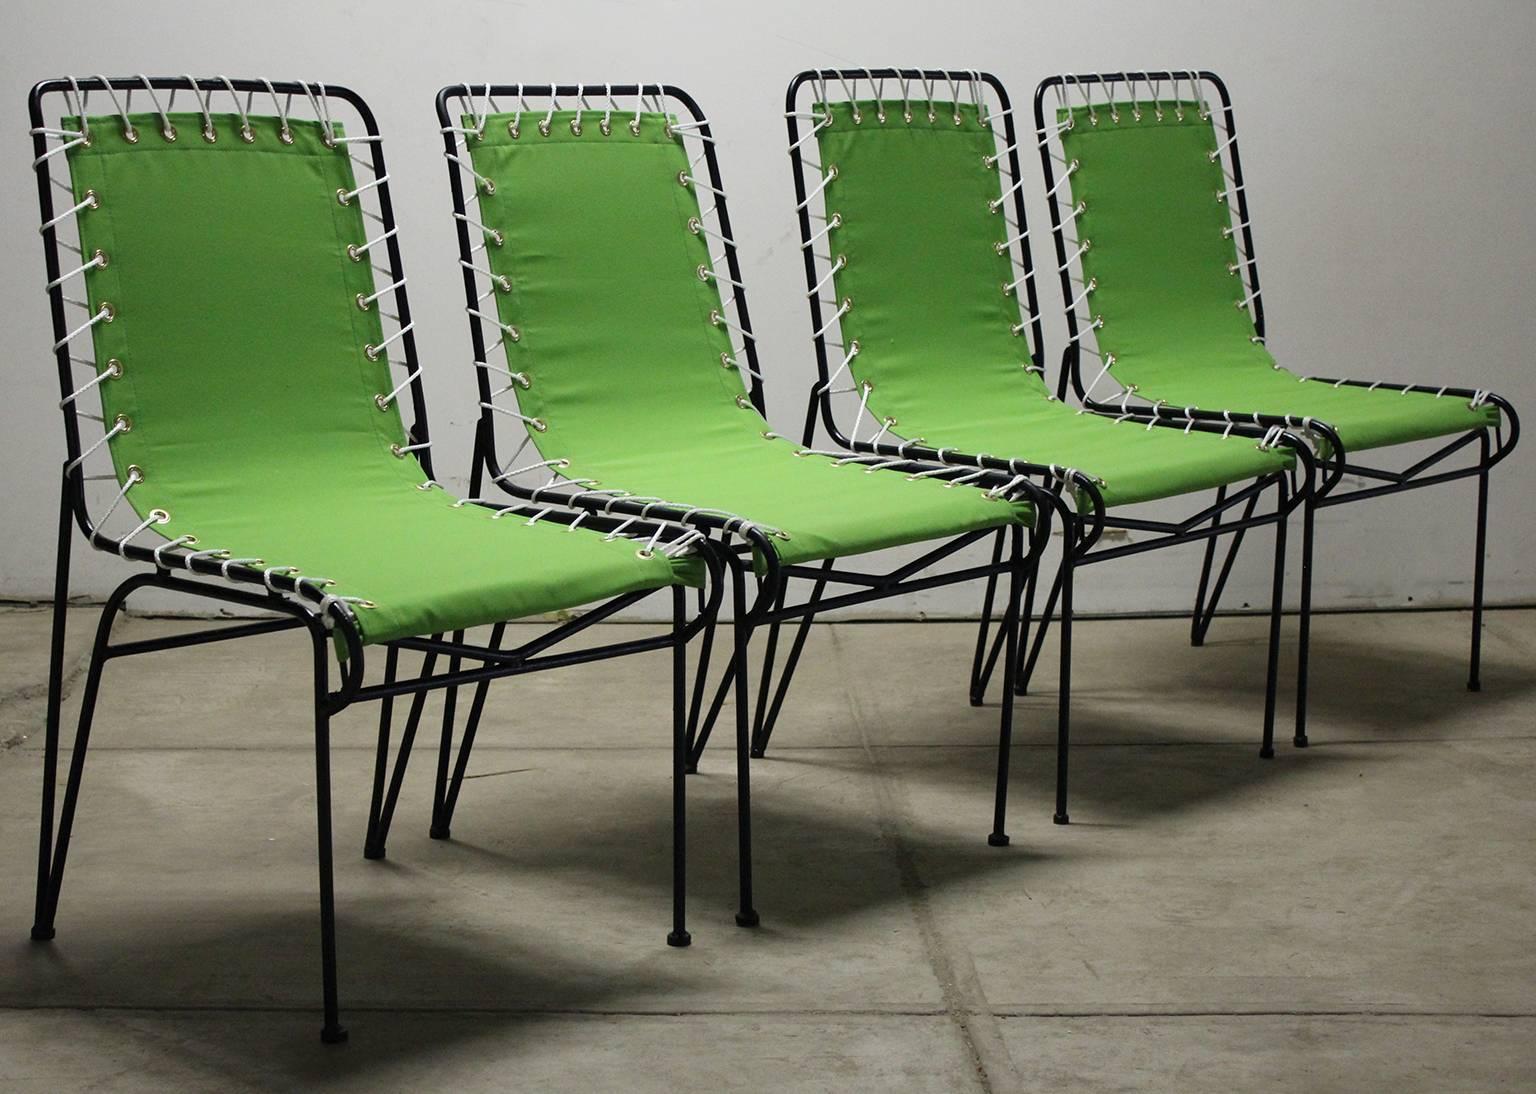 Magnifique ensemble de quatre chaises d'extérieur restaurées Saarinen-Swanson pour Ficks Reed, circa 1949. Ils ont des cadres en fer forgé et des sièges en toile. La toile a été refaite et les cadres sont fraîchement peints. Tous les cordages et les